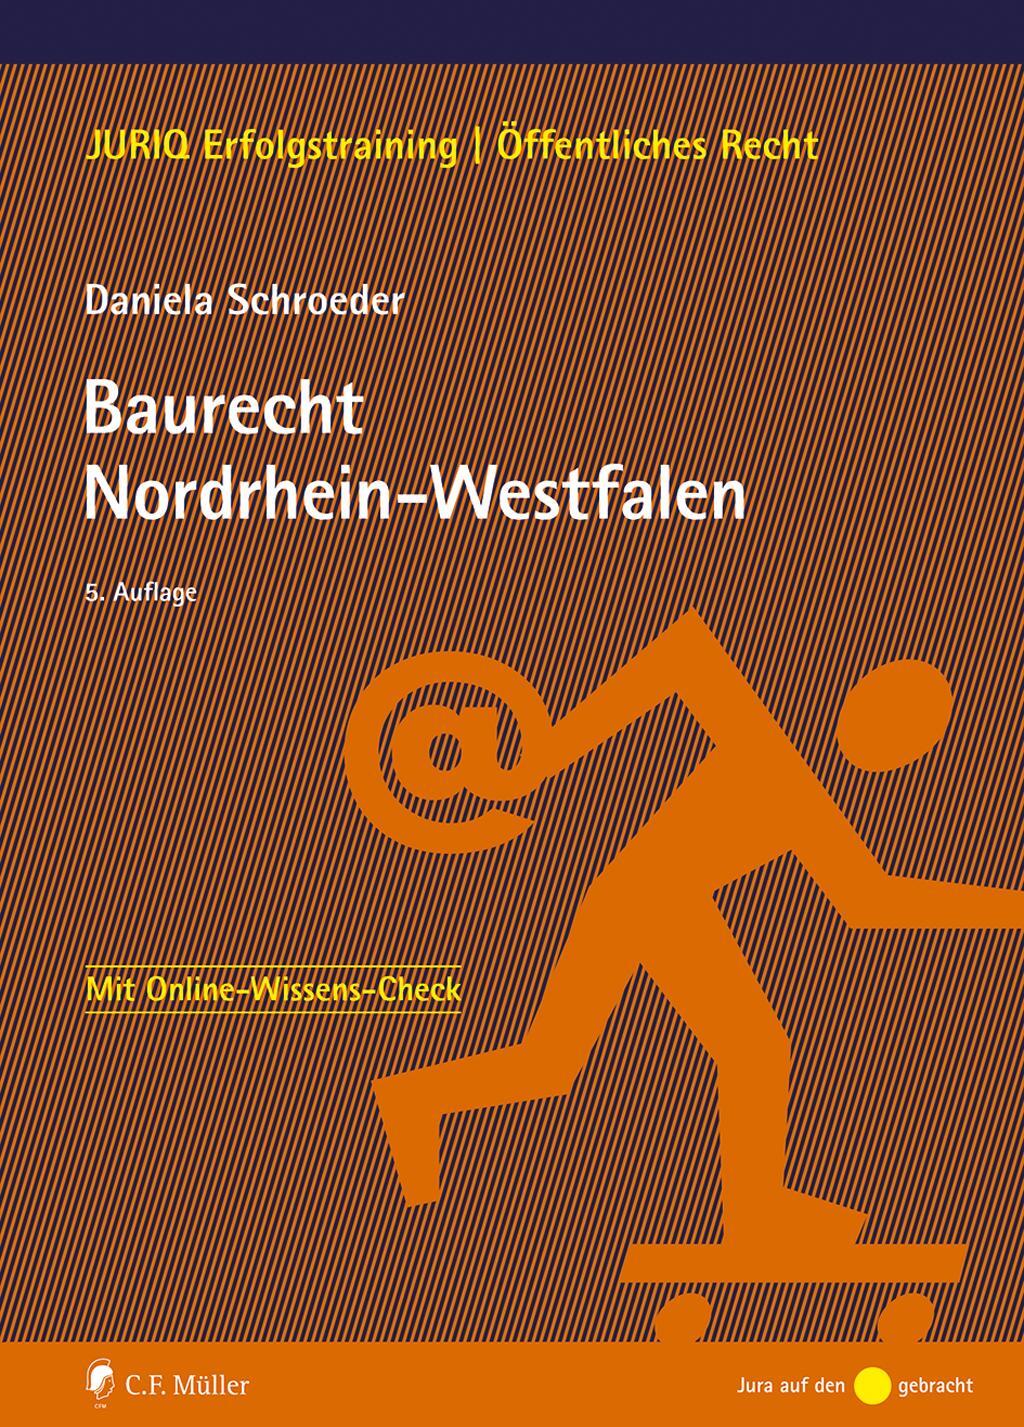 Baurecht Nordrhein-Westfalen - Schroeder, Daniela